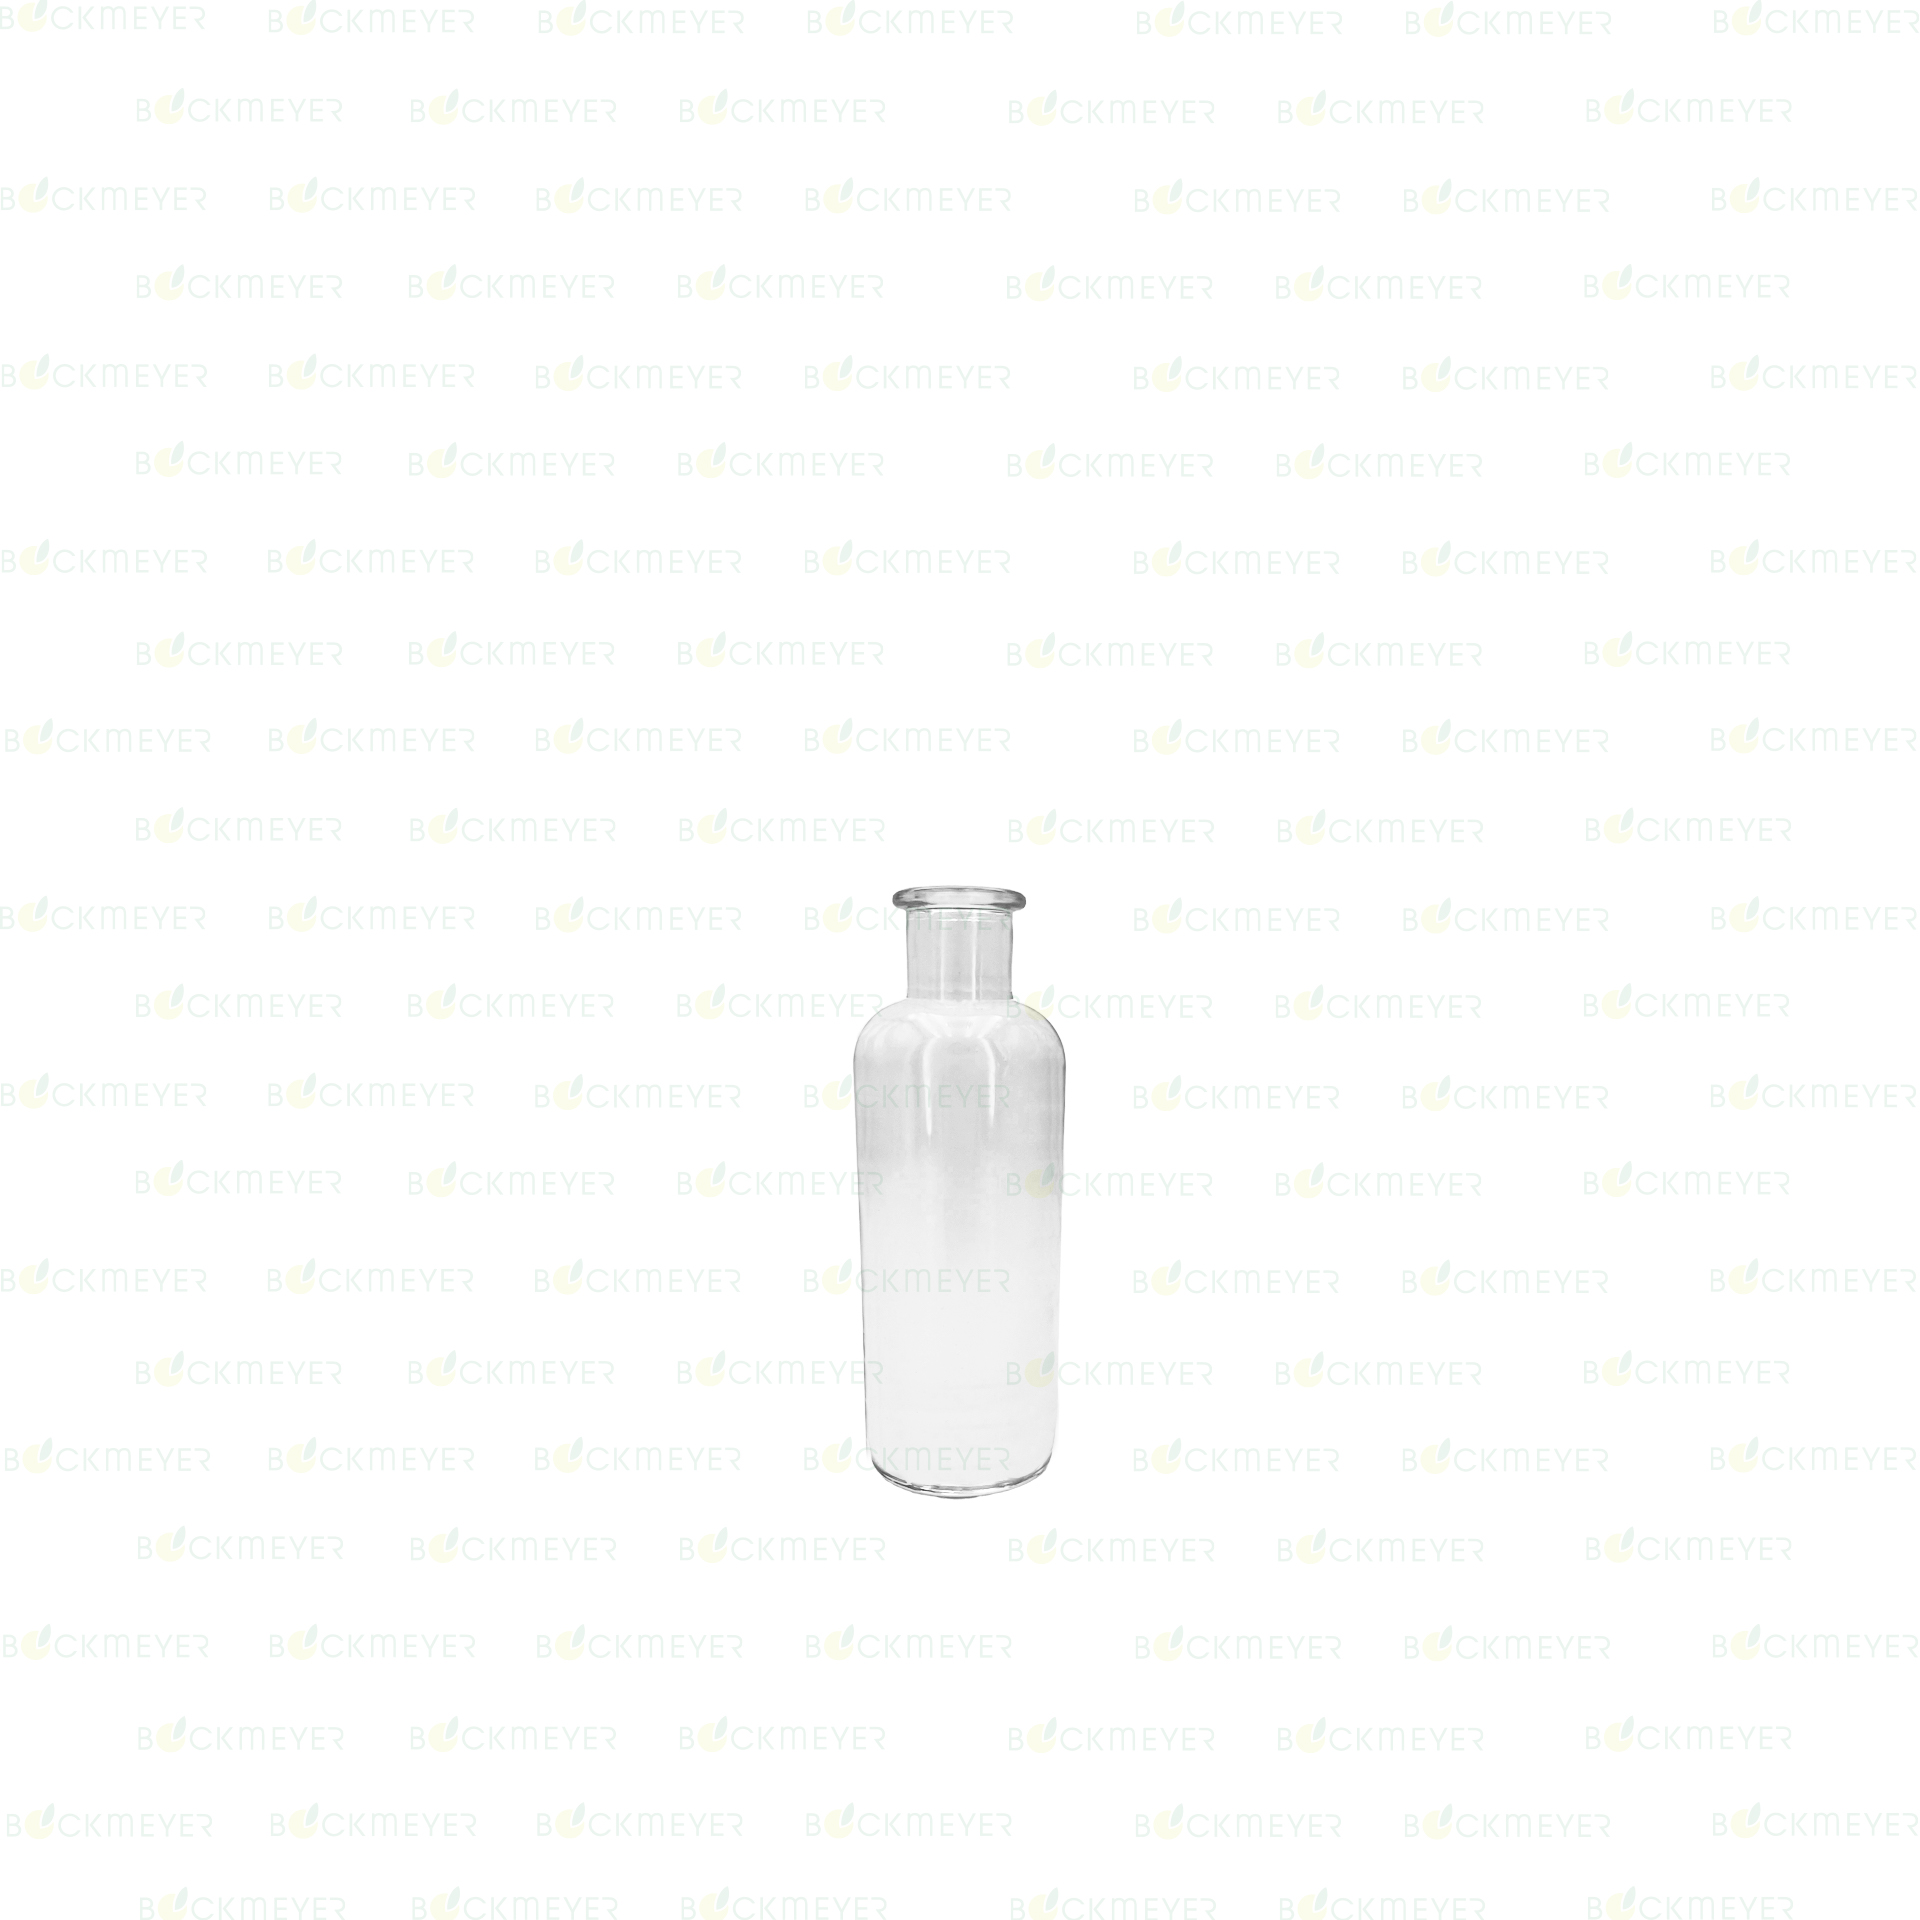 Krugflasche 0,2 Liter, weiß (OHNE VERSCHLUSS)